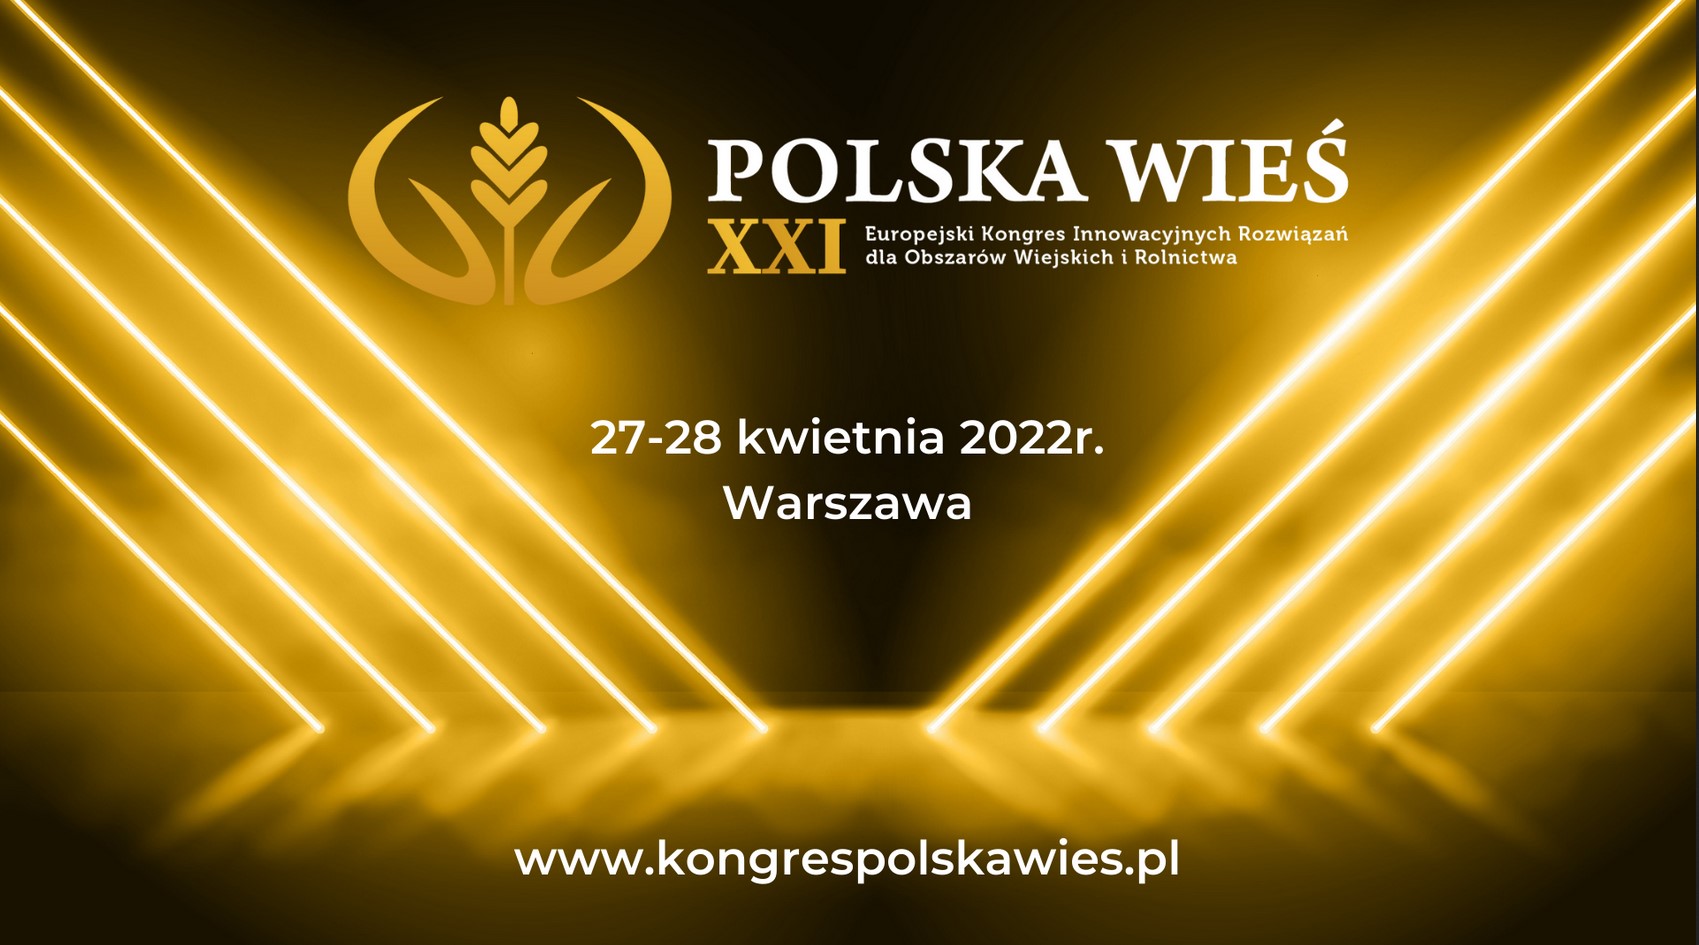 Polska Wieś XXI – Europejski Kongres Innowacyjnych Rozwiązań dla Obszarów Wiejskich i Rolnictwa w Warszawie